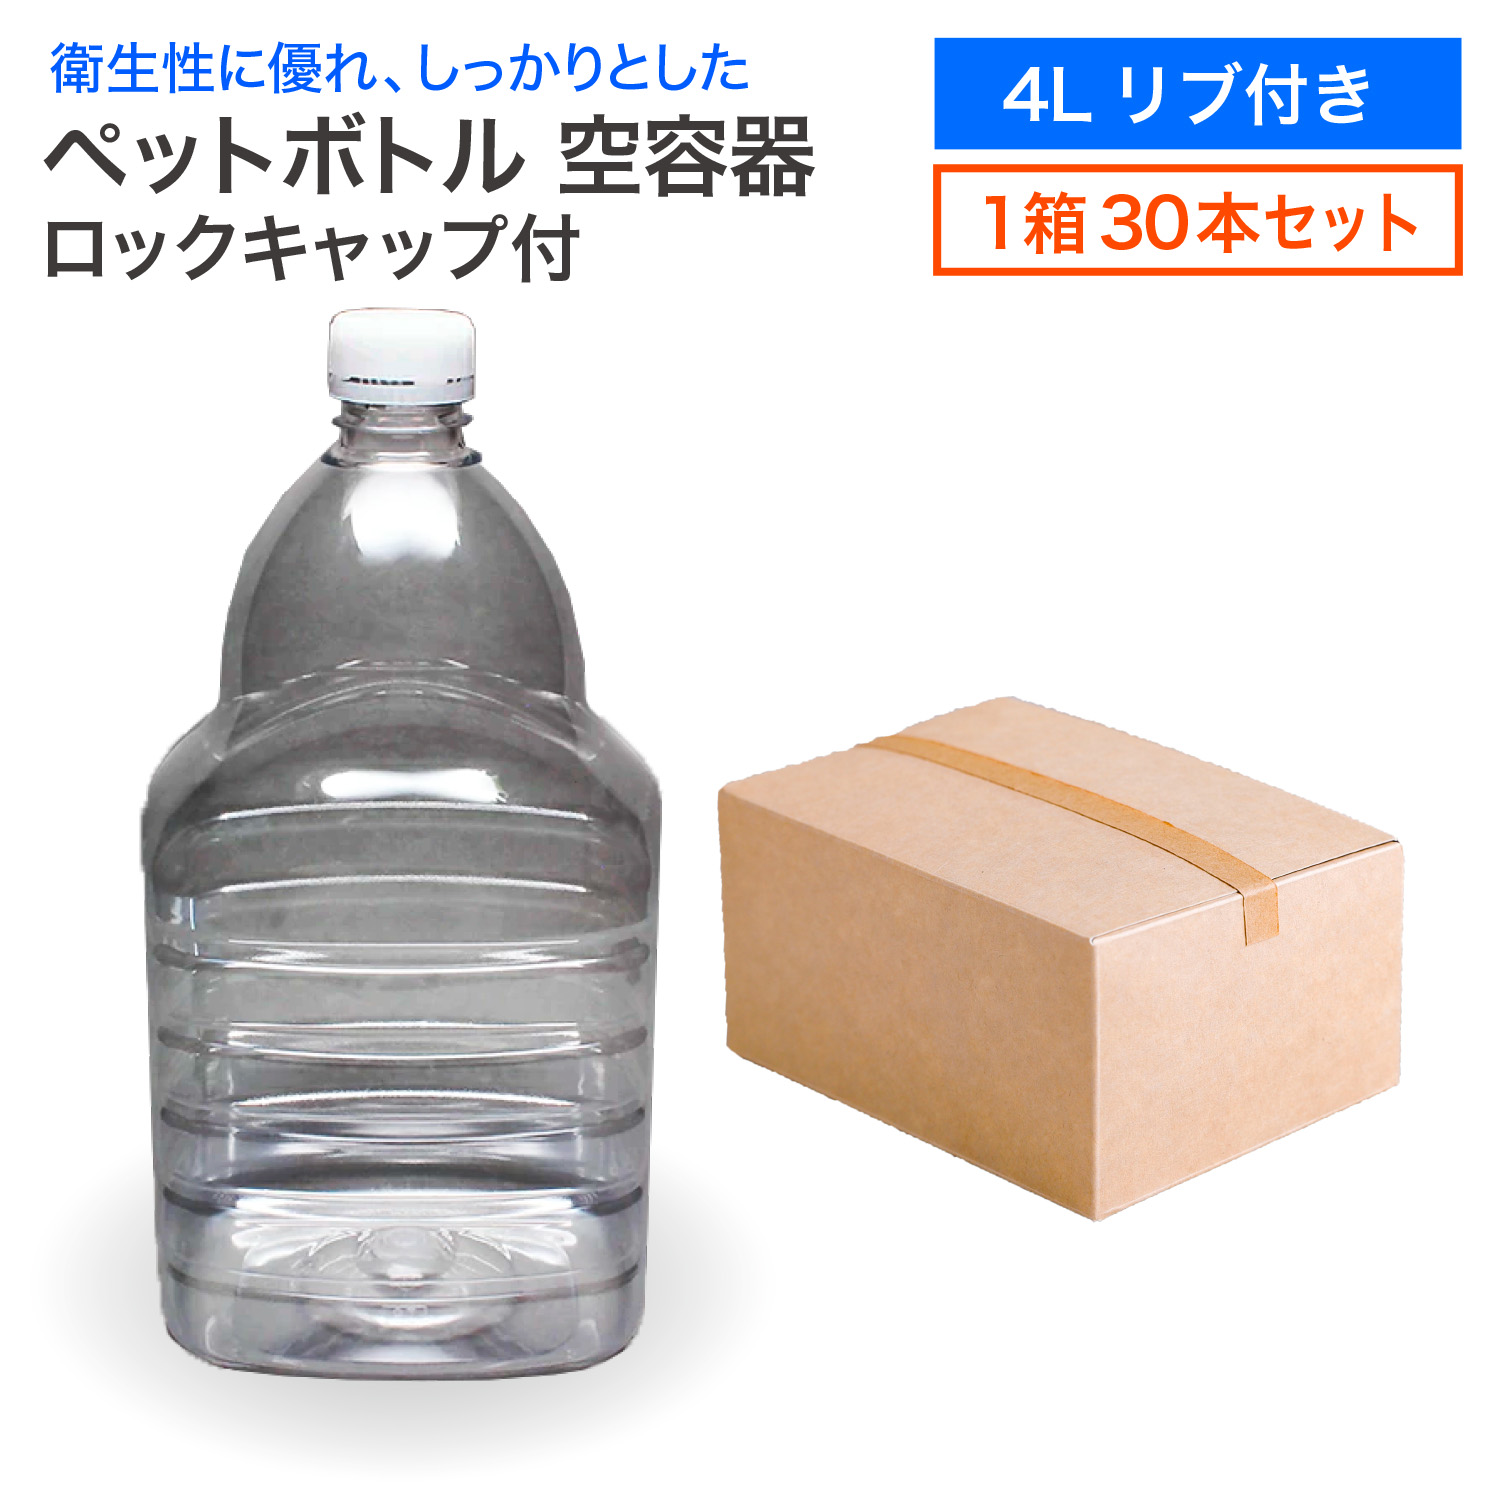 楽天市場】【セット販売】ペットボトル 空容器 4L リブ付き 30本入 1箱